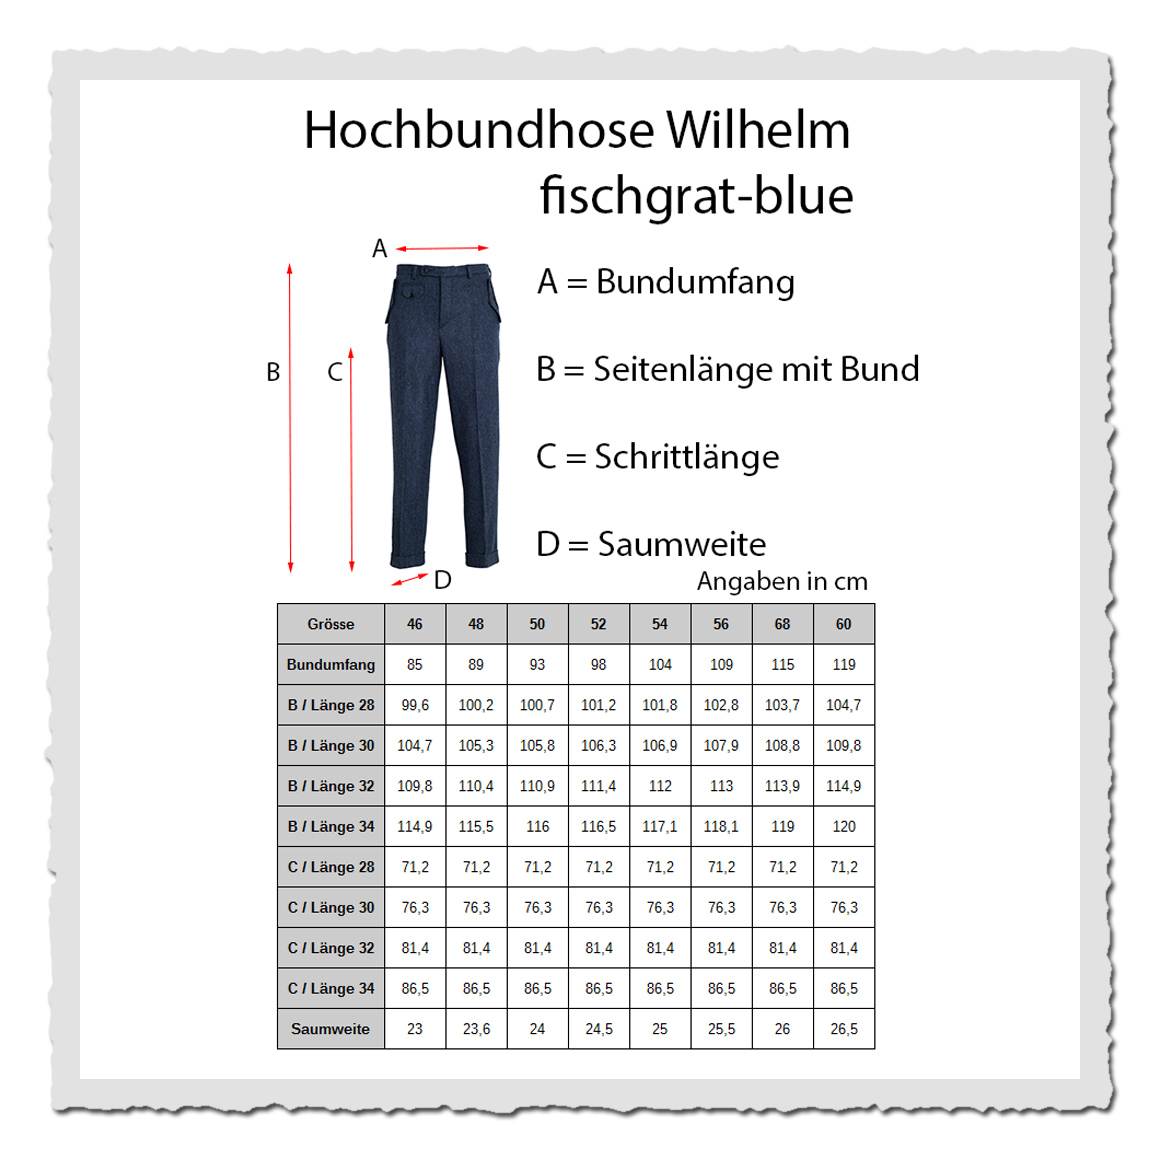 Herren-Hose Wilhelm Fischgrat-blue